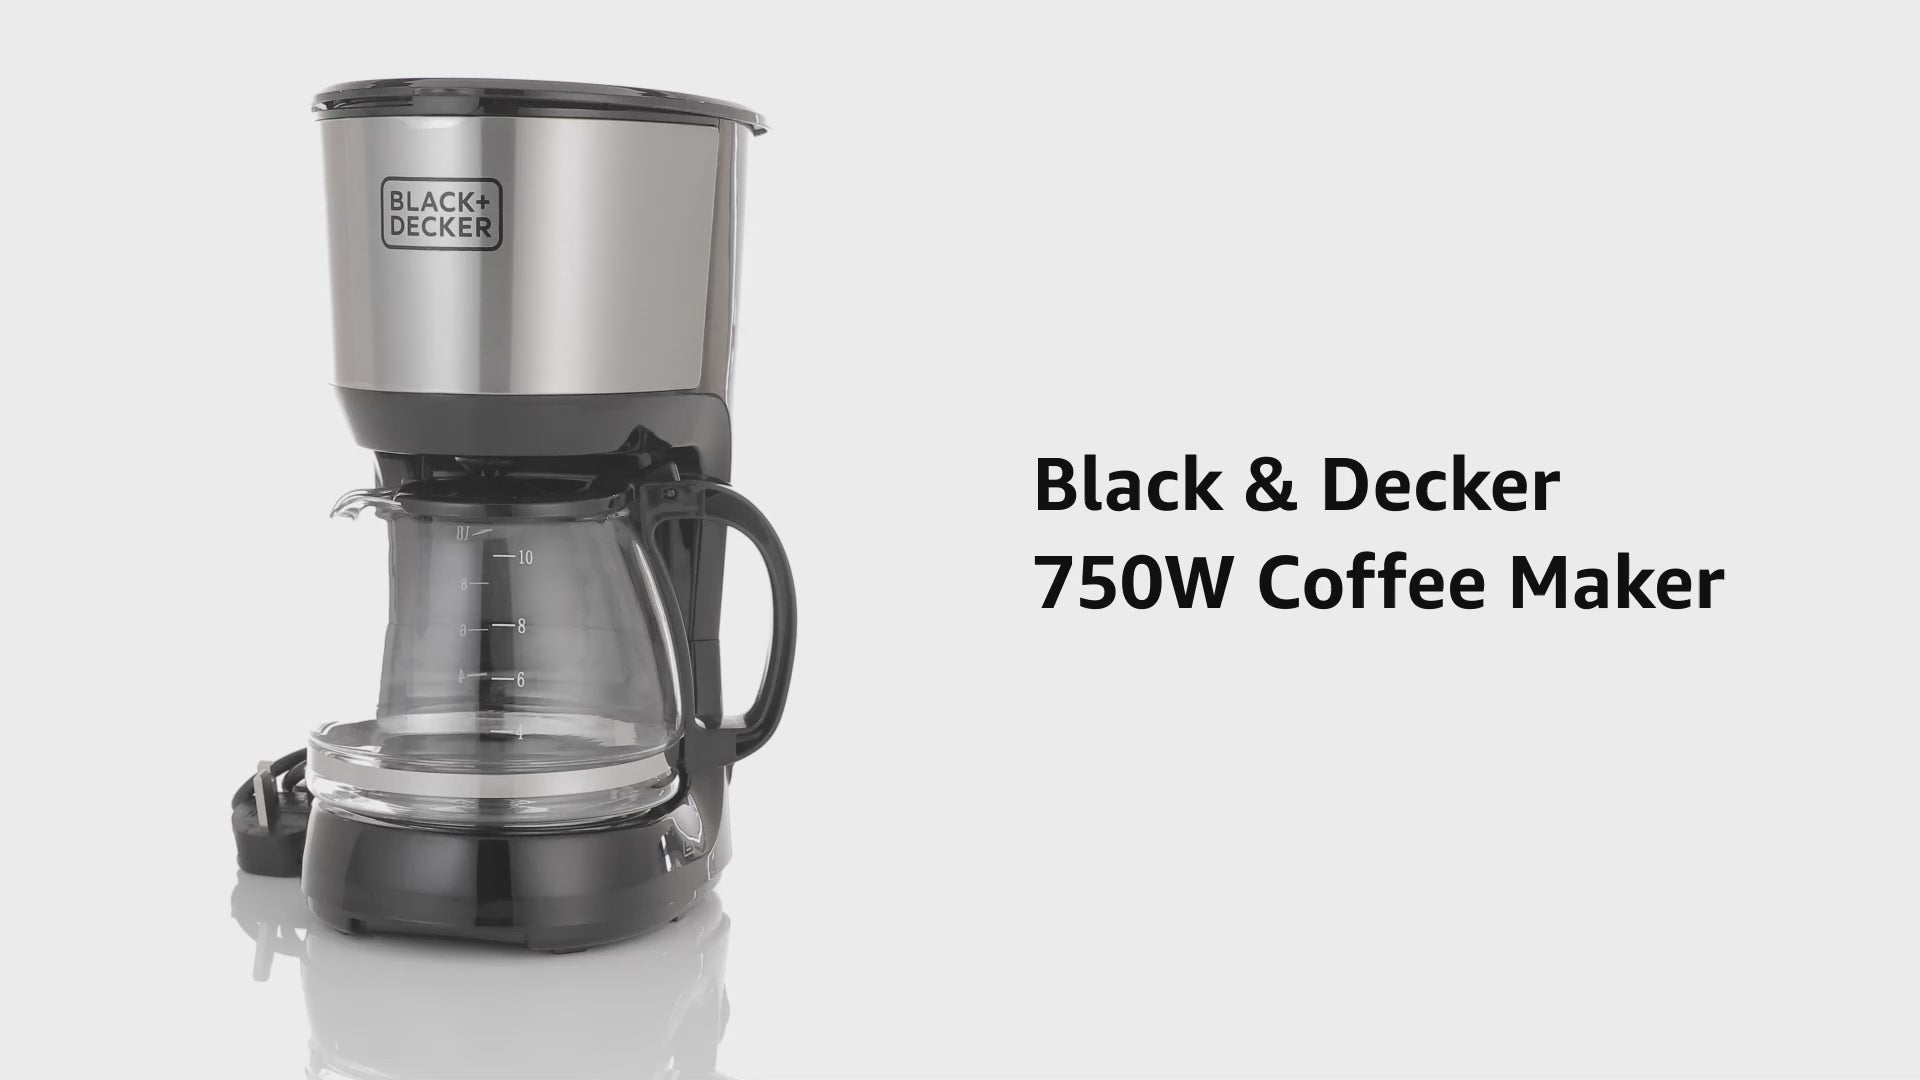 ماكينة تحضير القهوة الأمريكية من بلاك أند ديكر بقوة 750 واط و 1.25 لتر